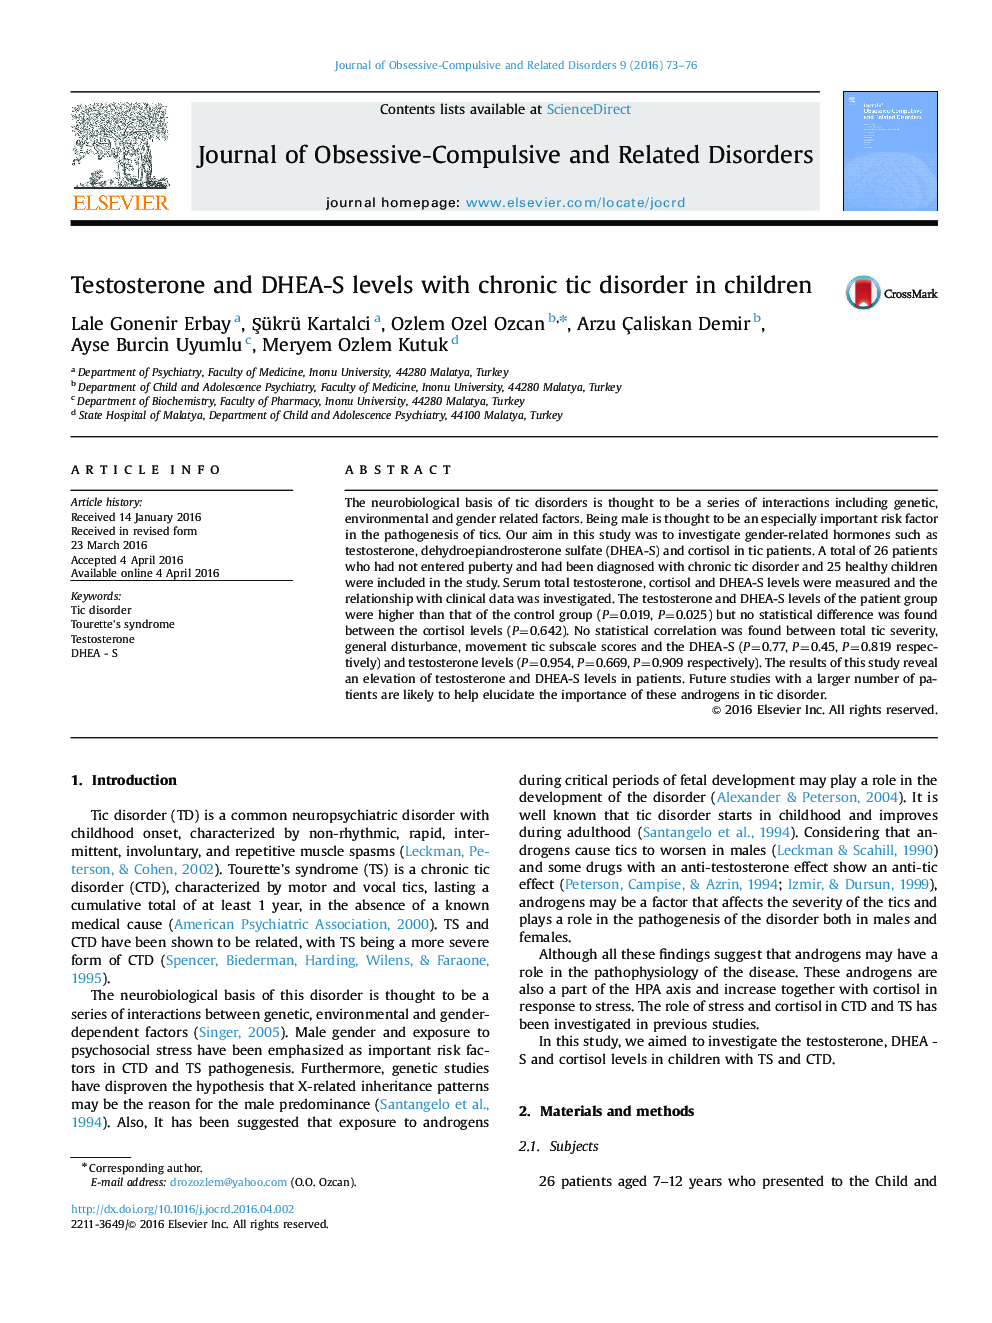 سطوح تستوسترون و DHEA-S مبتلا به اختلال تیک مزمن در کودکان